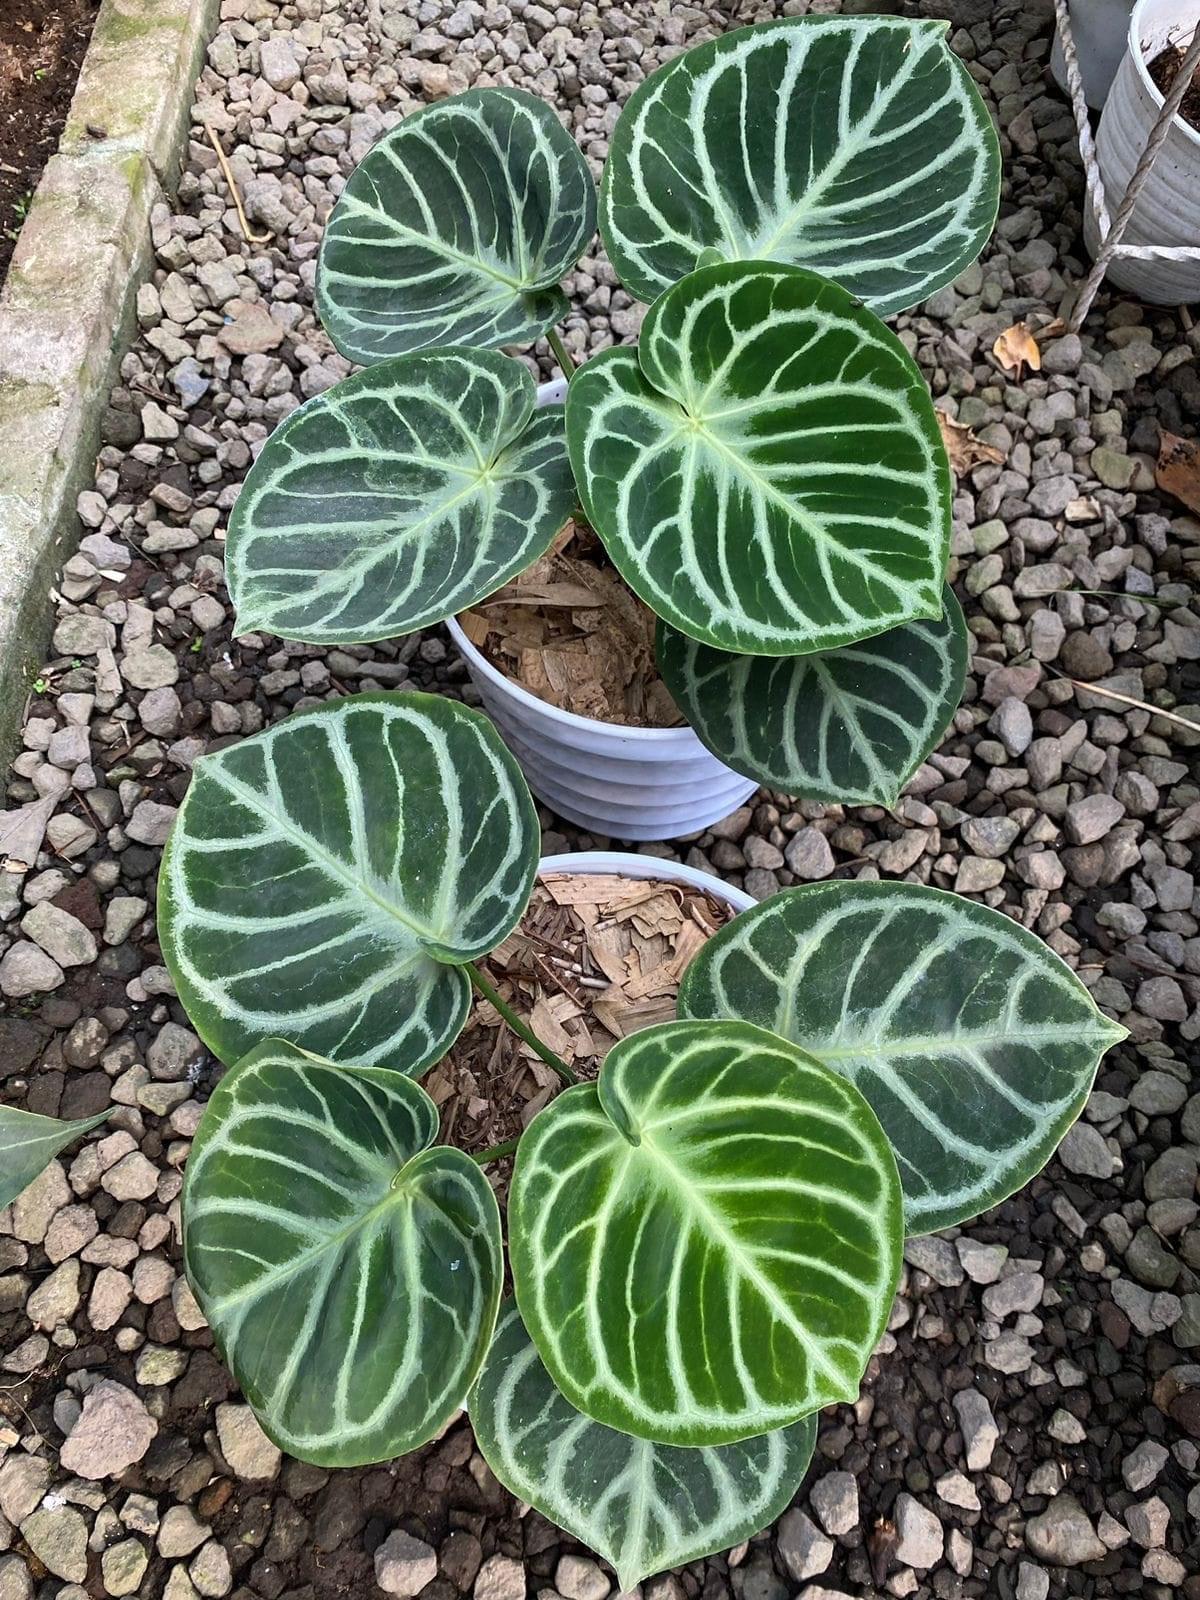 Anthurium Dorayaki Original - Indonesia Plant